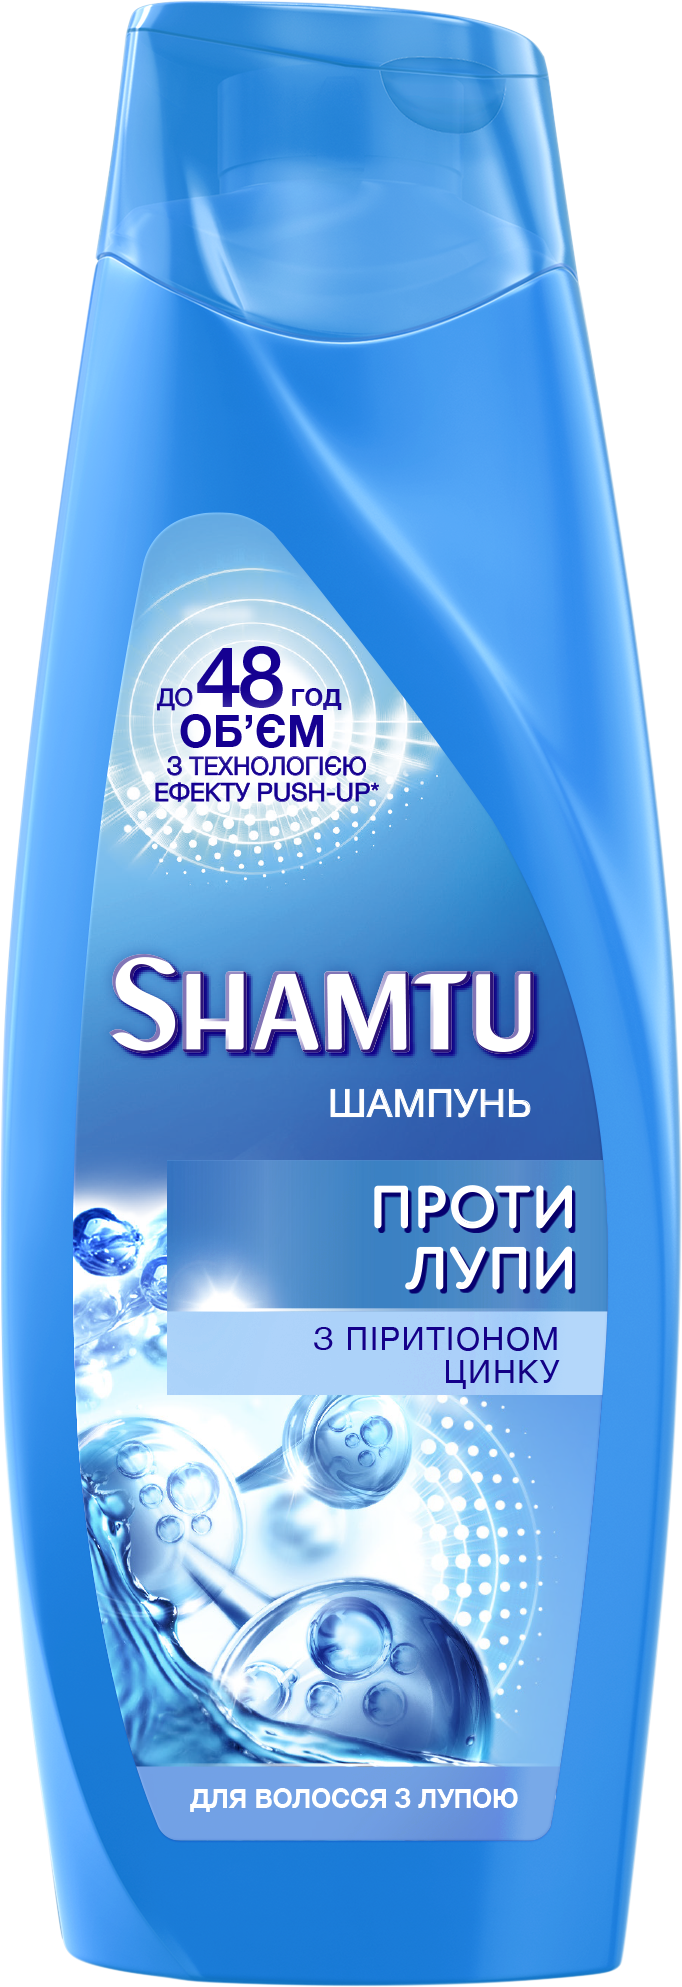 Шампунь Shamtu Против Перхоти с пиритионом цинка для волос, склонных к перхоти, 200 мл - фото 1